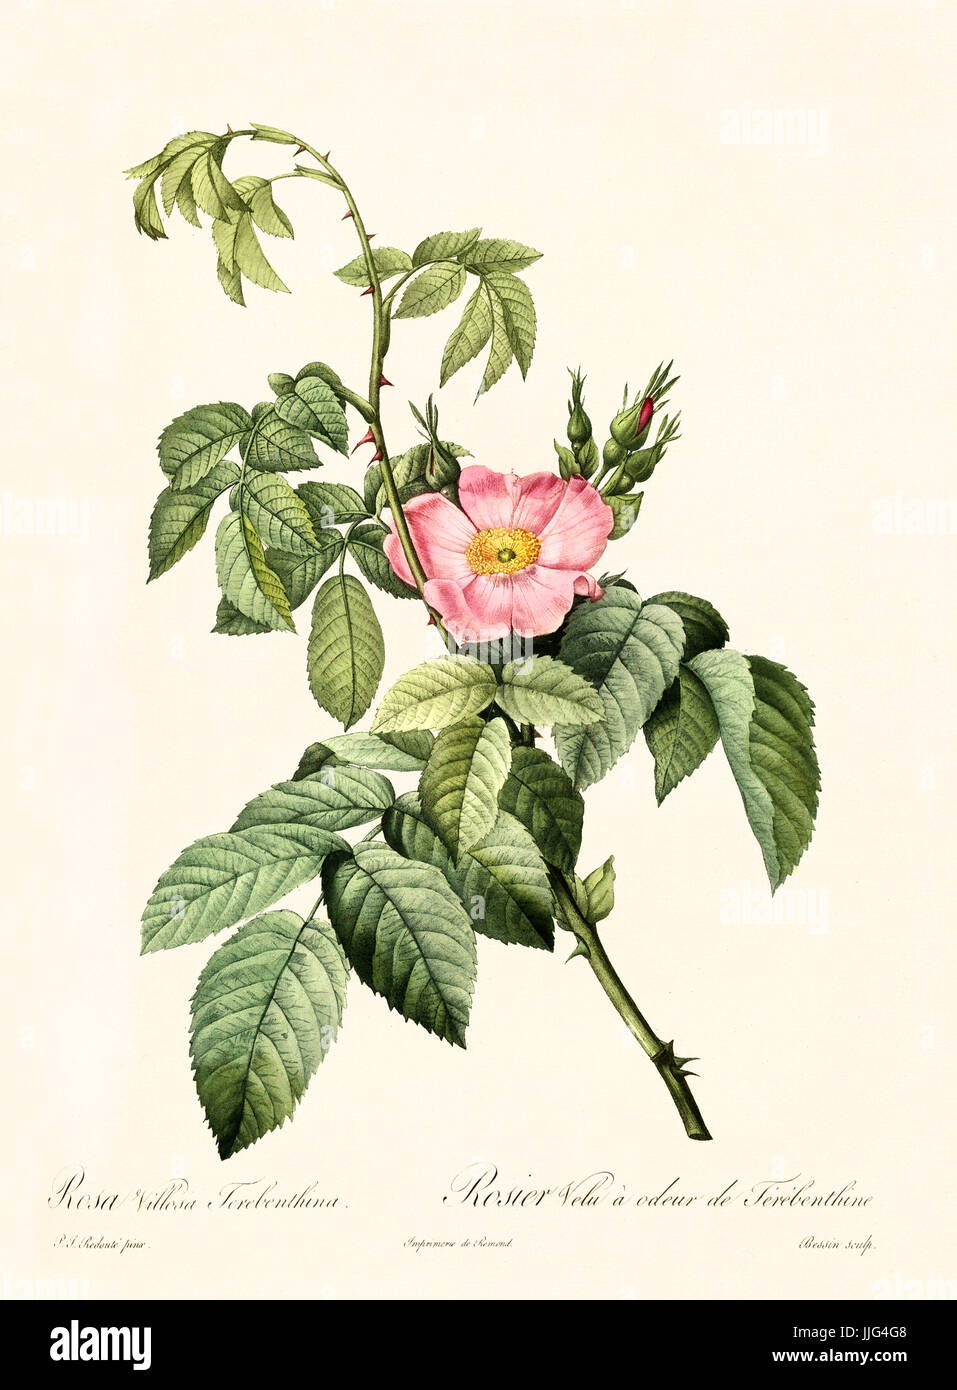 Vecchia illustrazione di Rosa villosa terebenthina. Creato da P. R. Redoute, pubblicato su Les Roses, Imp. Firmin Didot, Parigi, 1817-24 Foto Stock